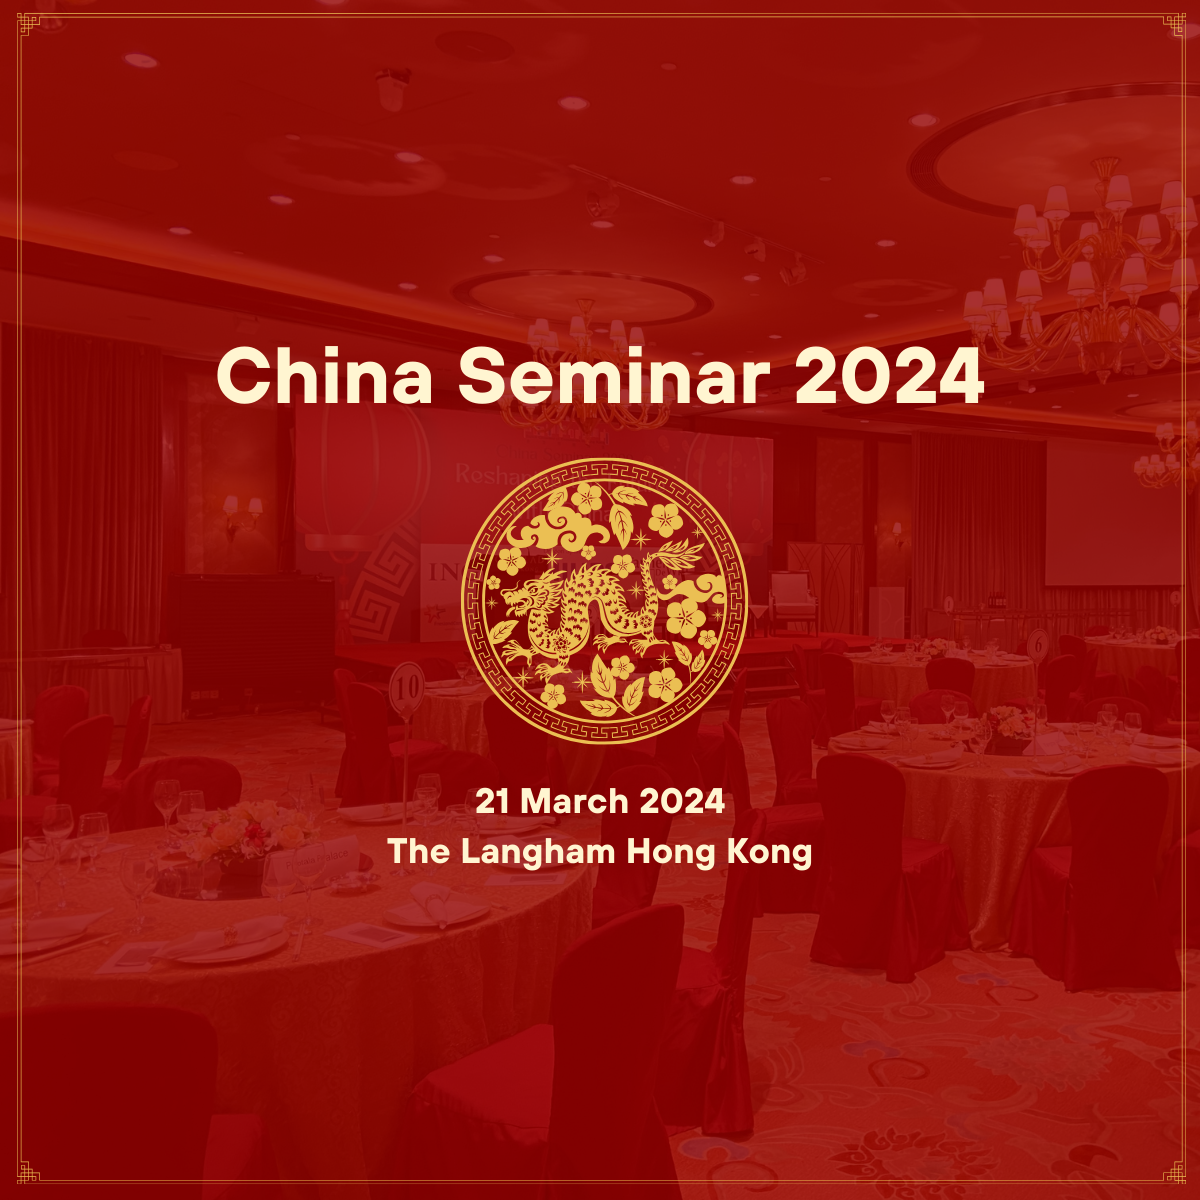 China Seminar banner